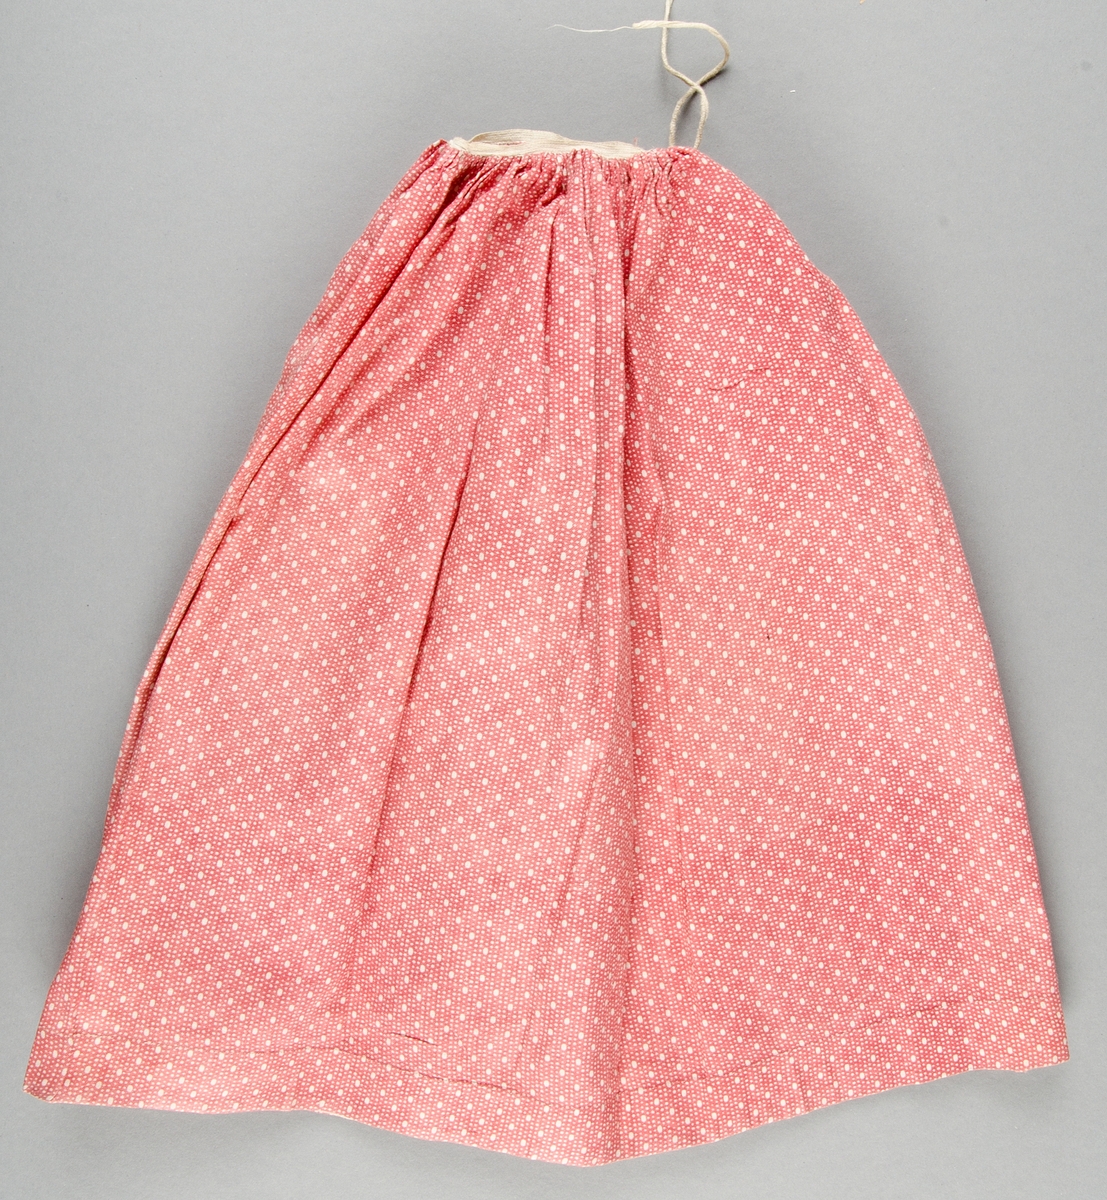 Dockklänning, blus och kjol av bomullslärft med tryckt mönster, rött med vita prickar. Livet knäpps bak, draperingar på framstycket. Spetskant.